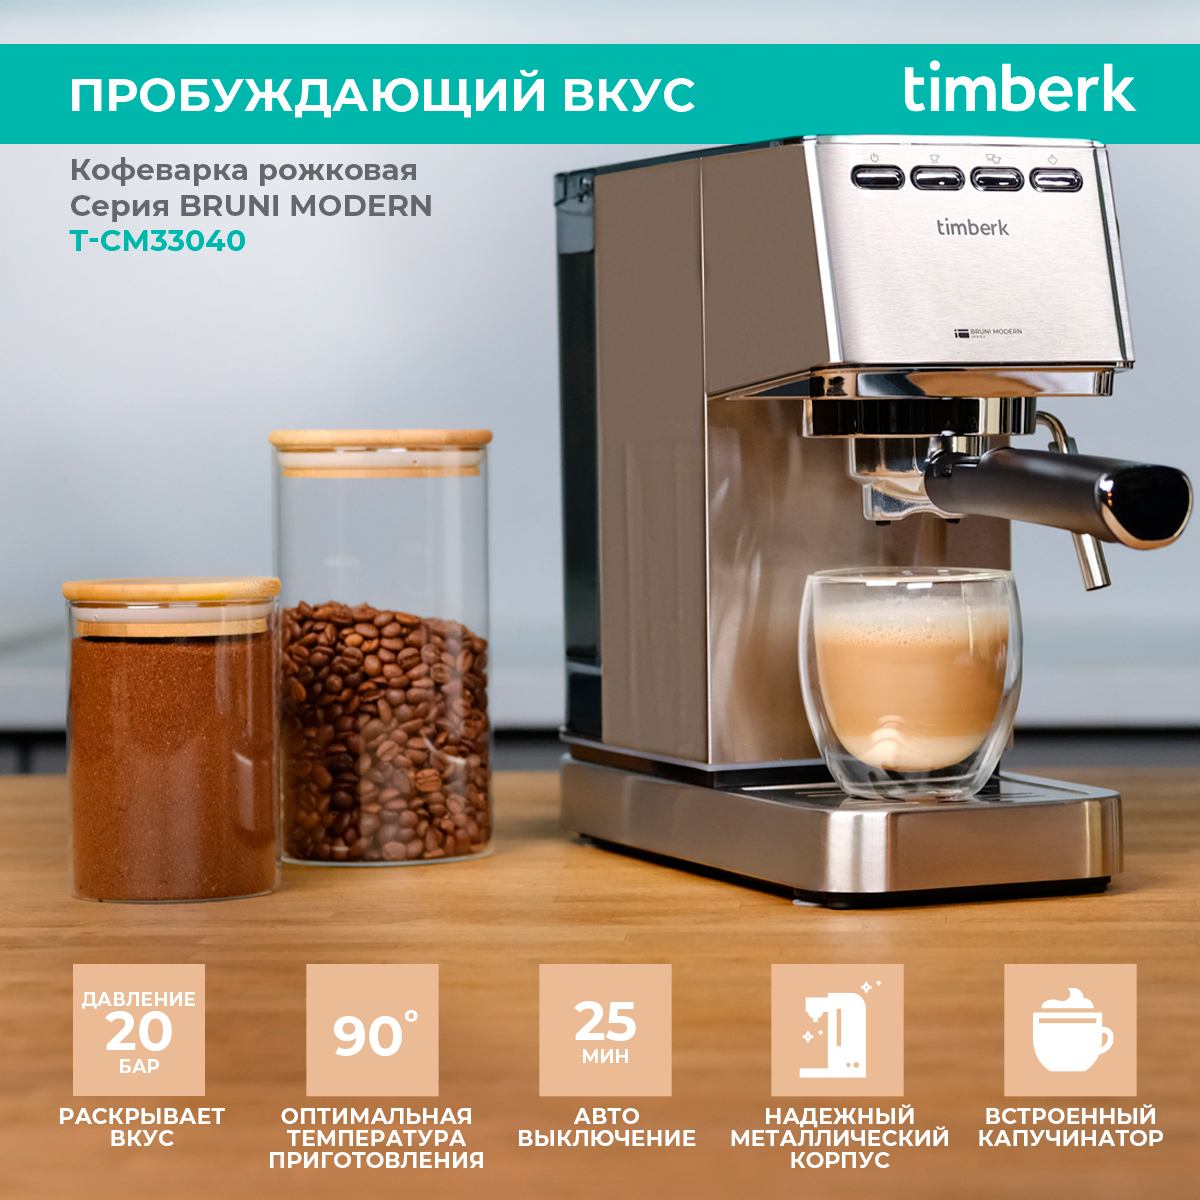 Рожковая кофеварка Timberk T-CM33040 серебристый рожковая кофеварка timberk t cm33040 серебристый